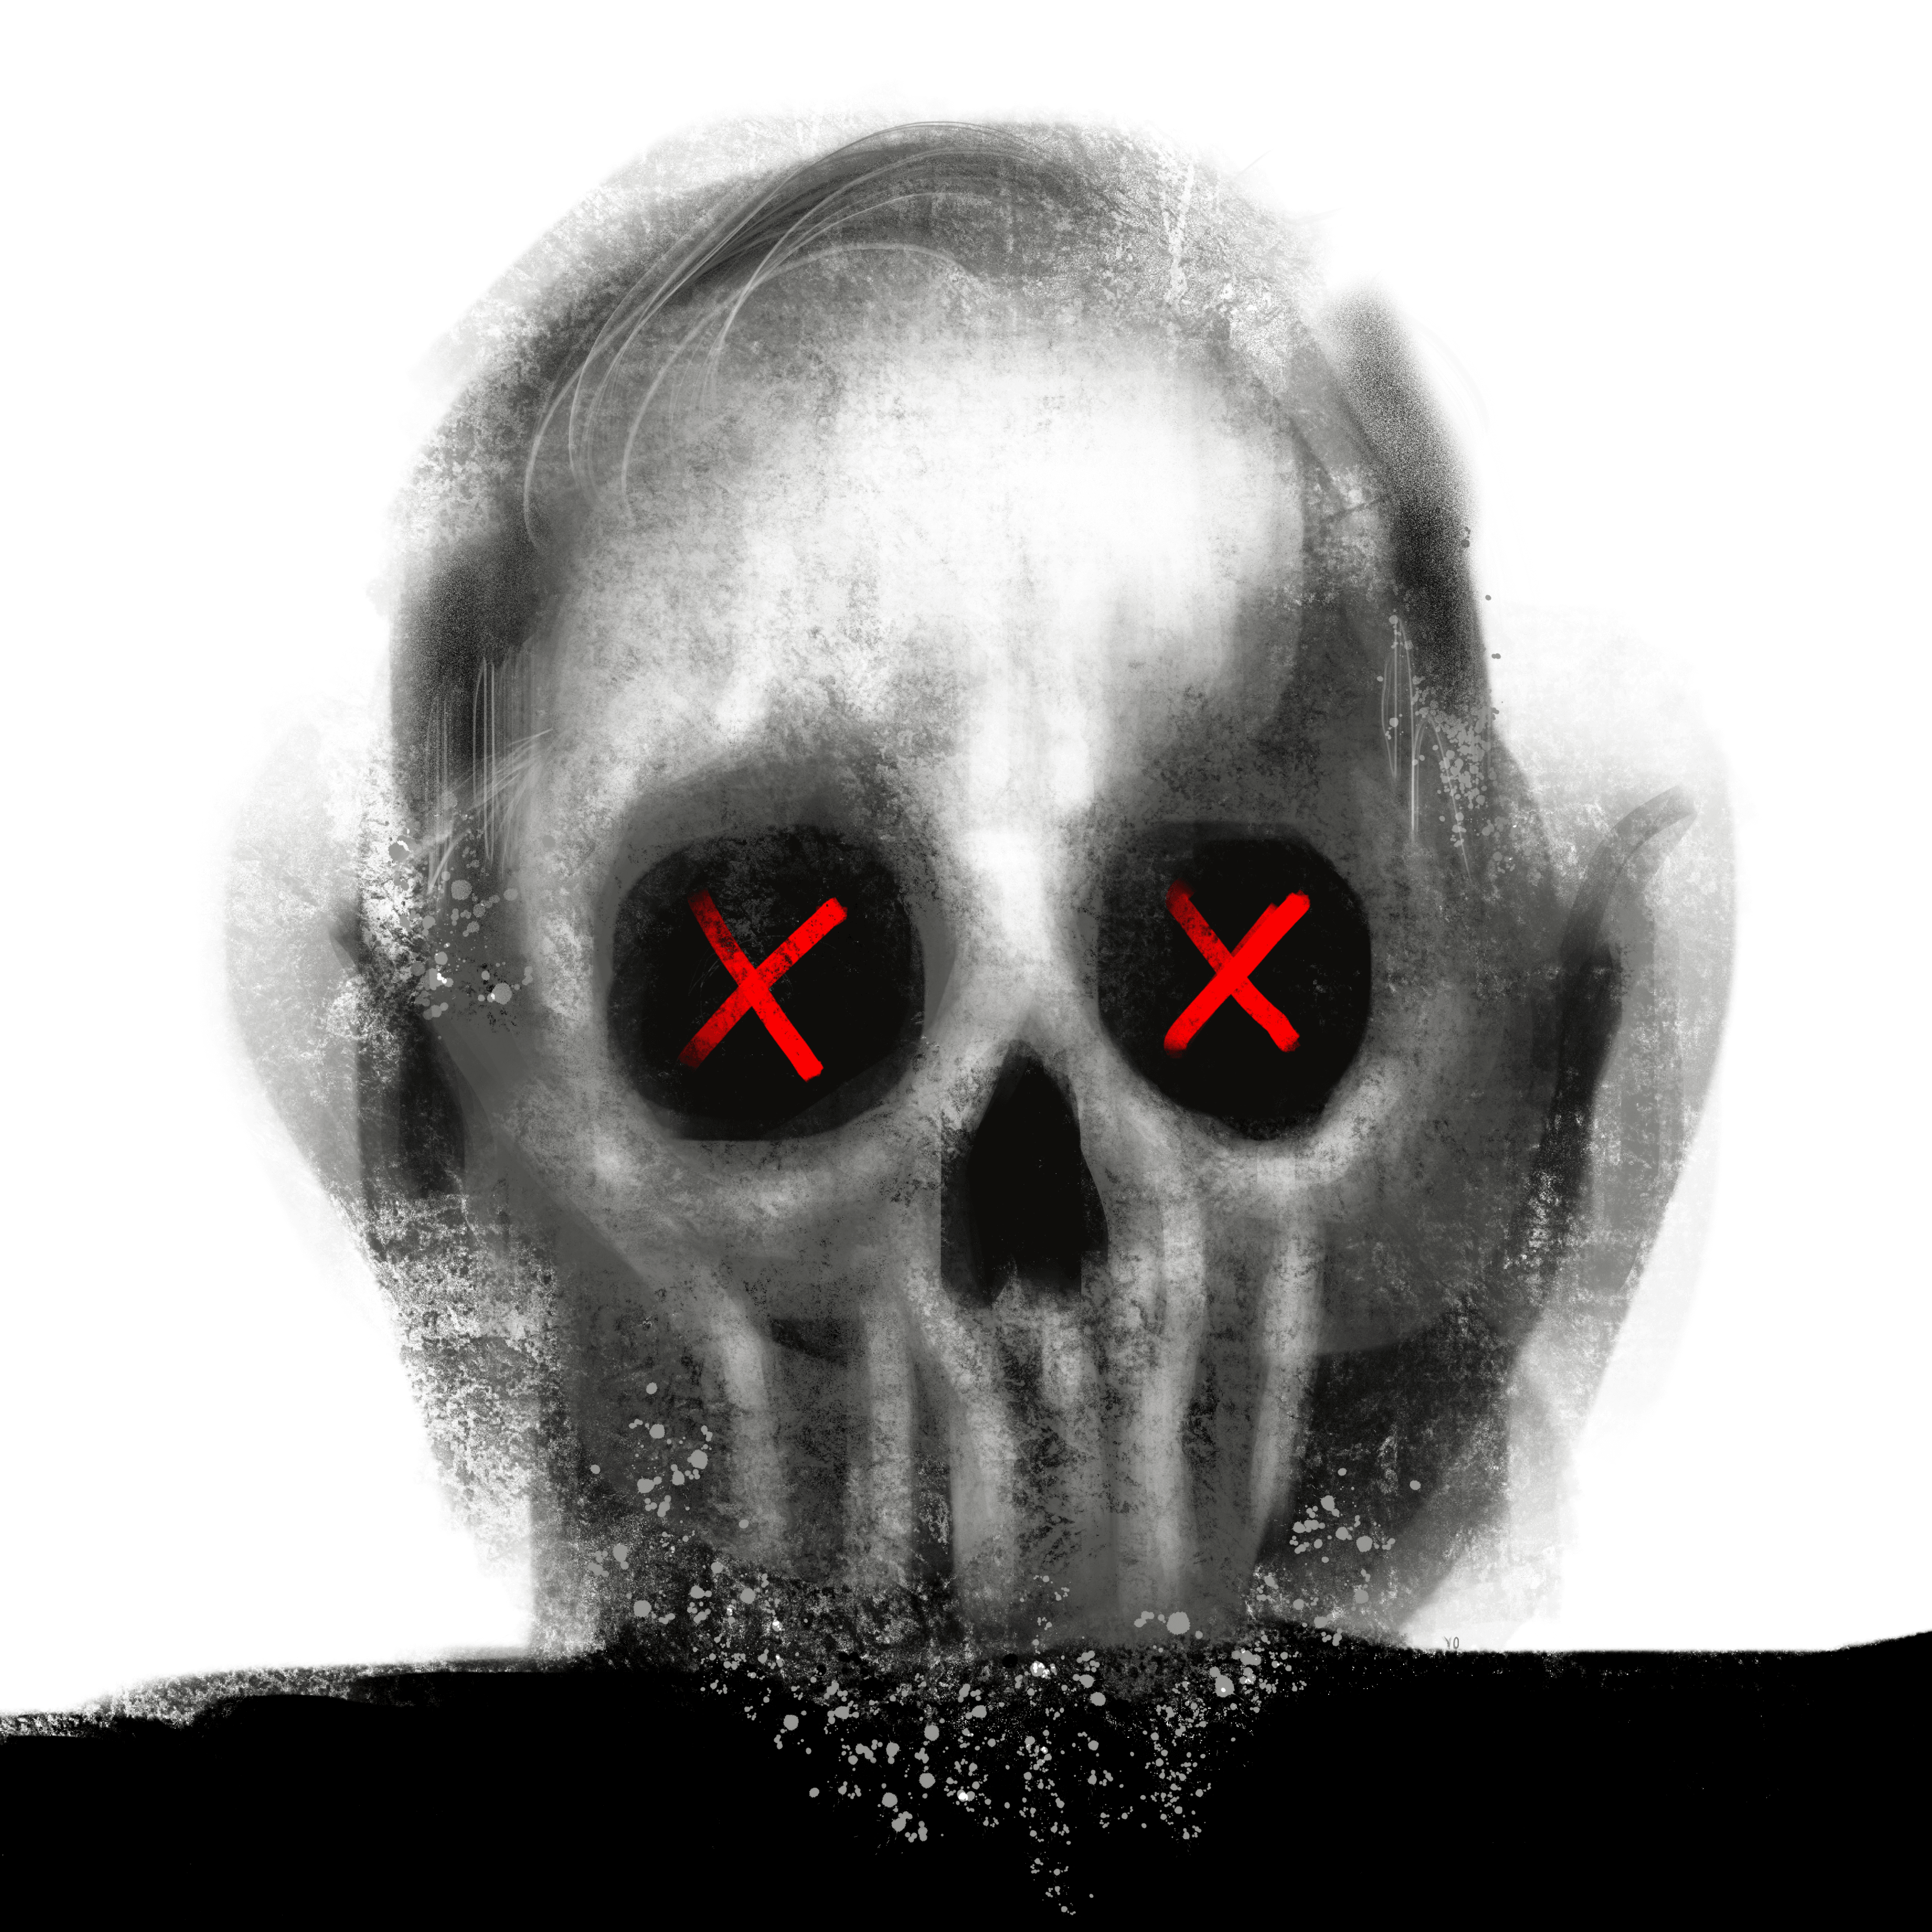 Skull #282 - "Mastermind"